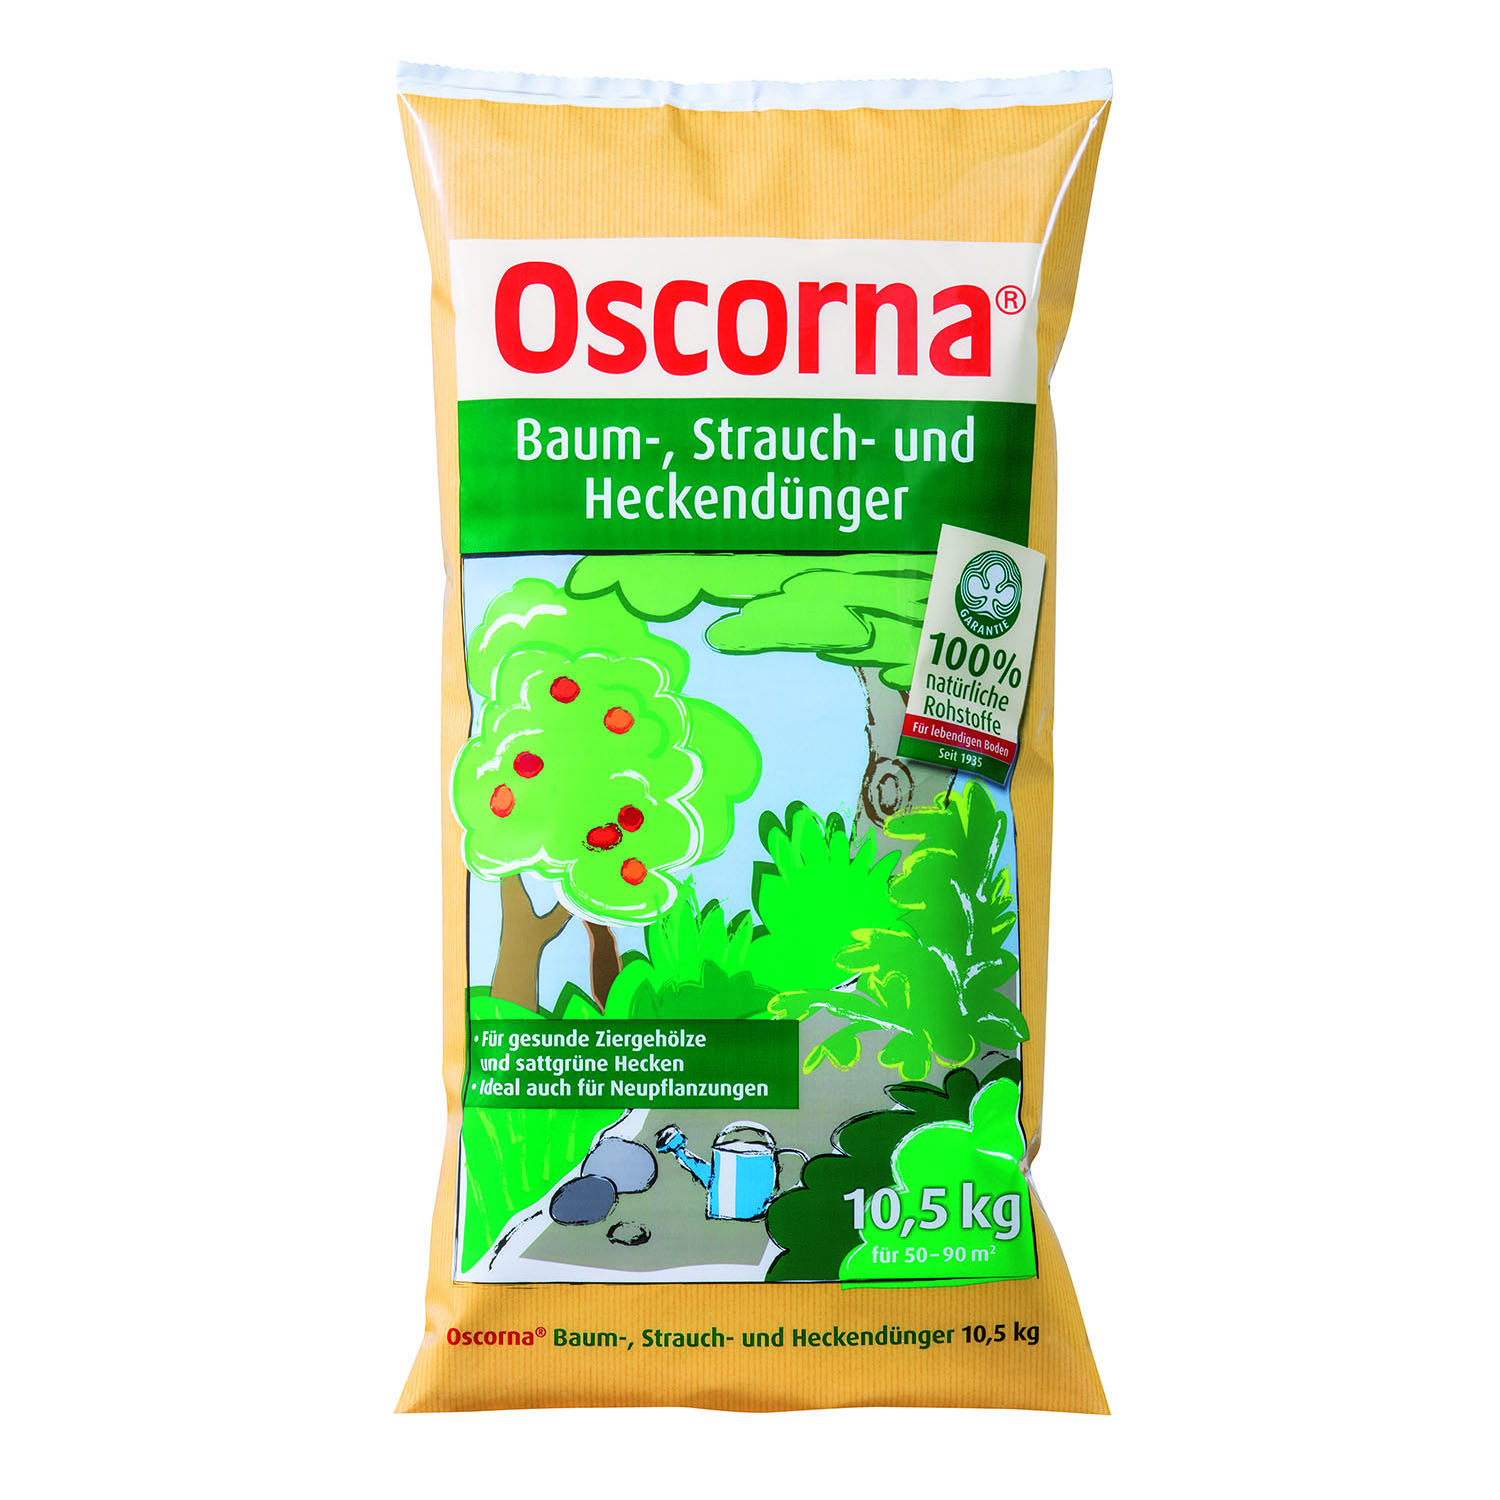 Oscorna Baum-, Strauch- und Heckendünger